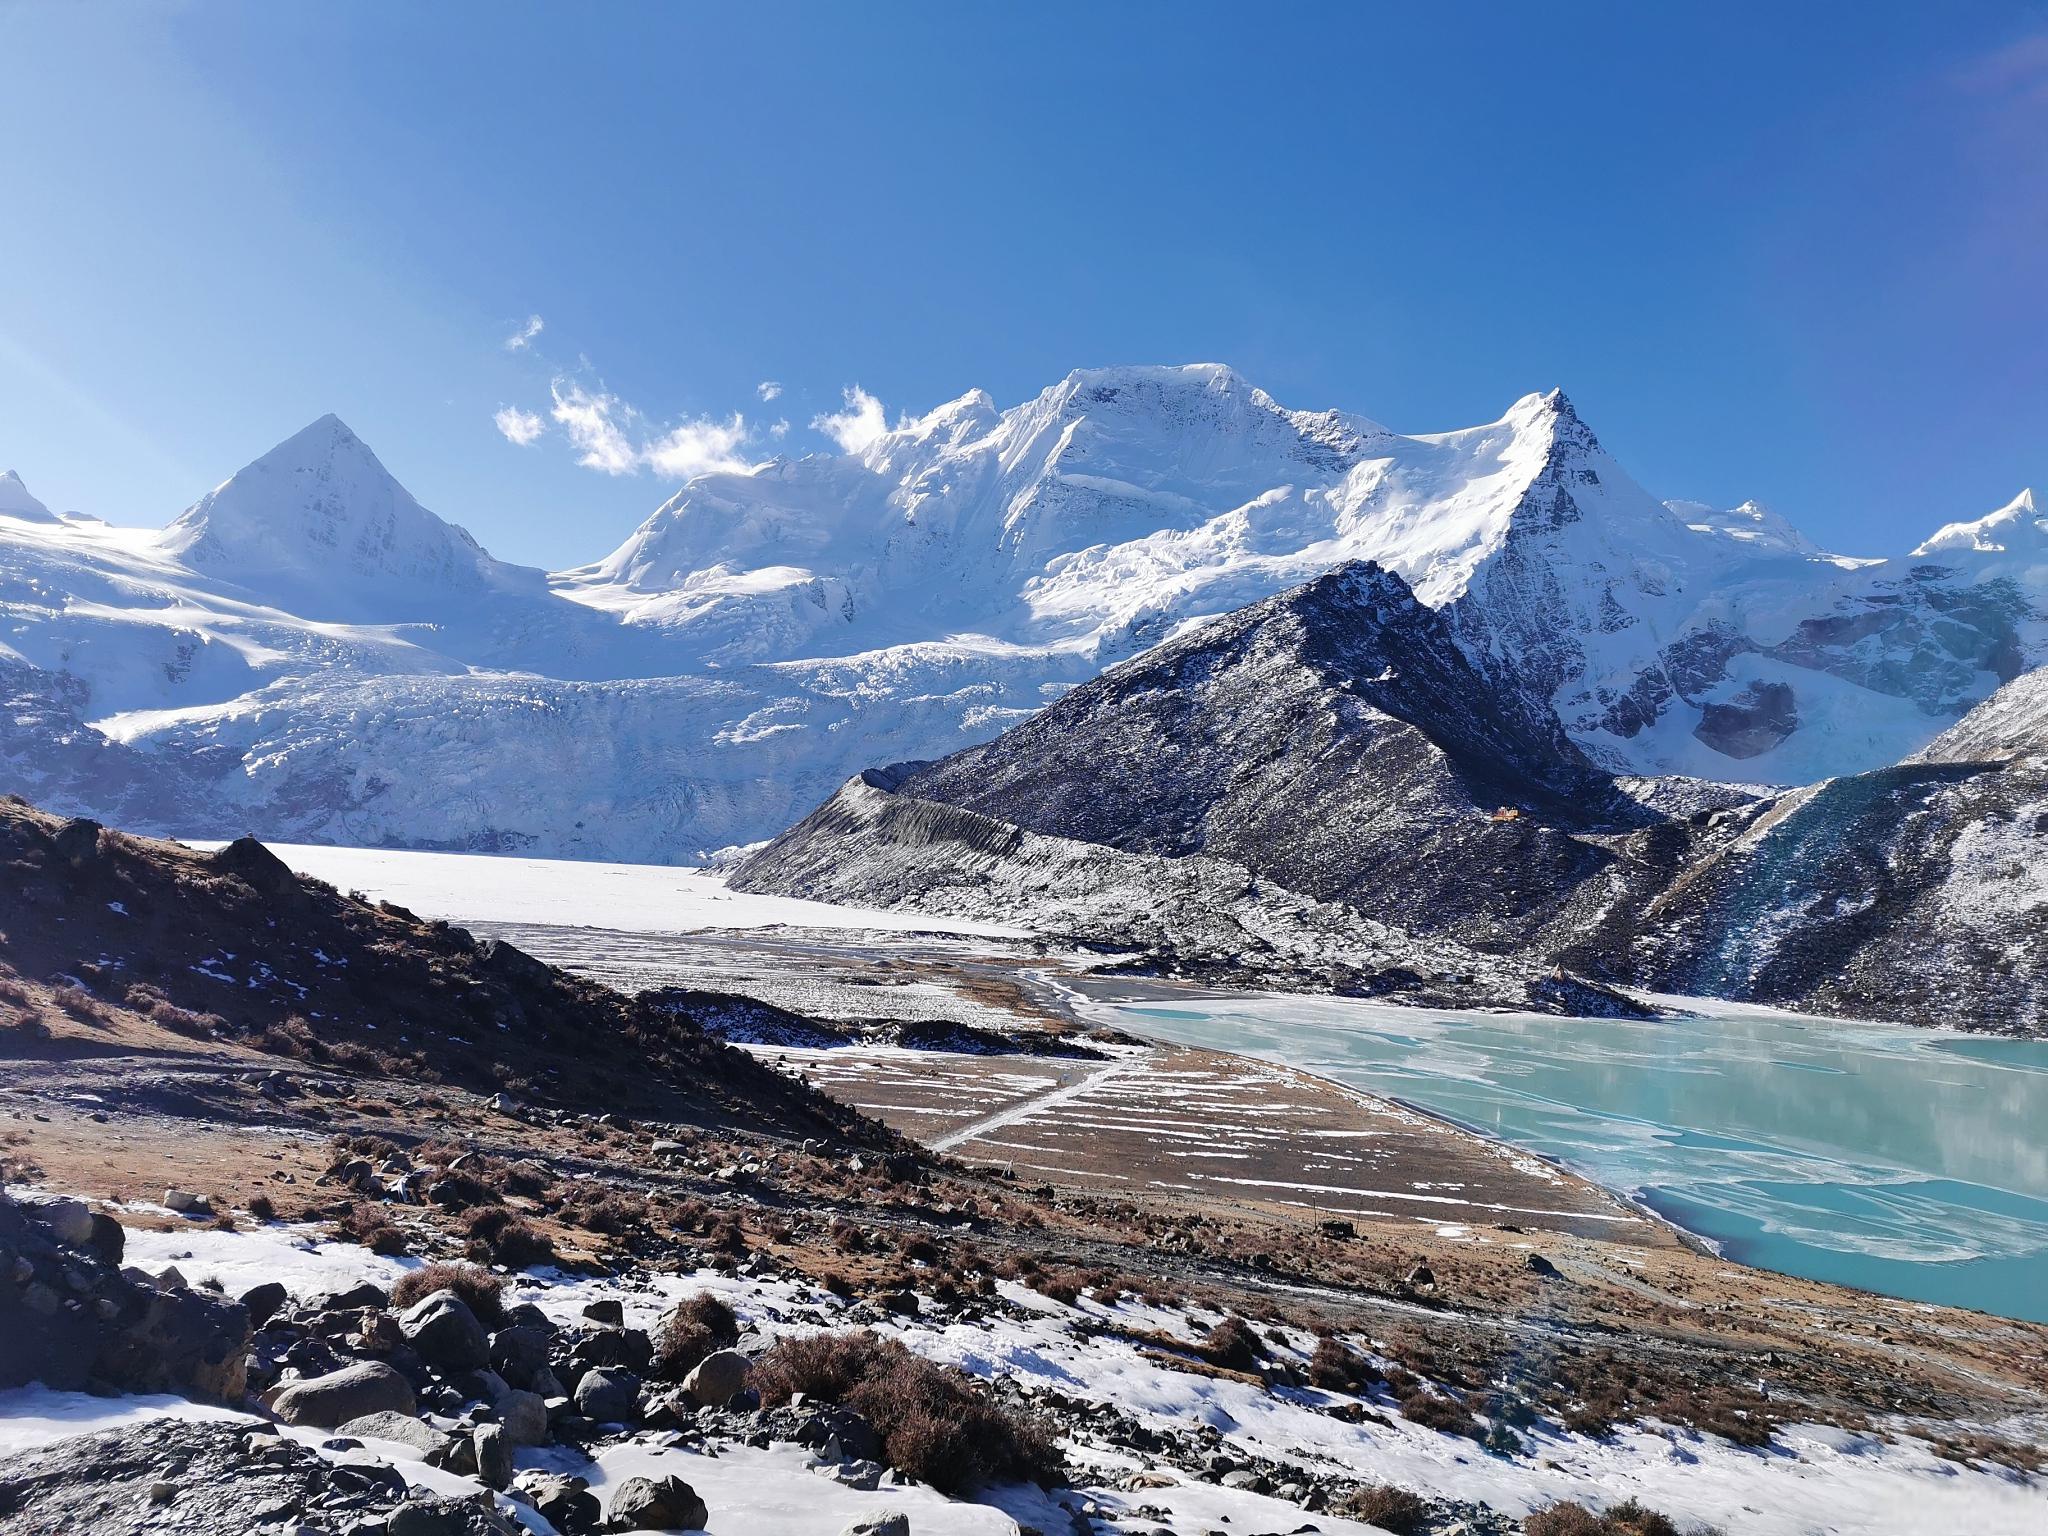 冰川公园,玉龙雪山最具代表性的景点之一 冰川公园,位于中国云南省